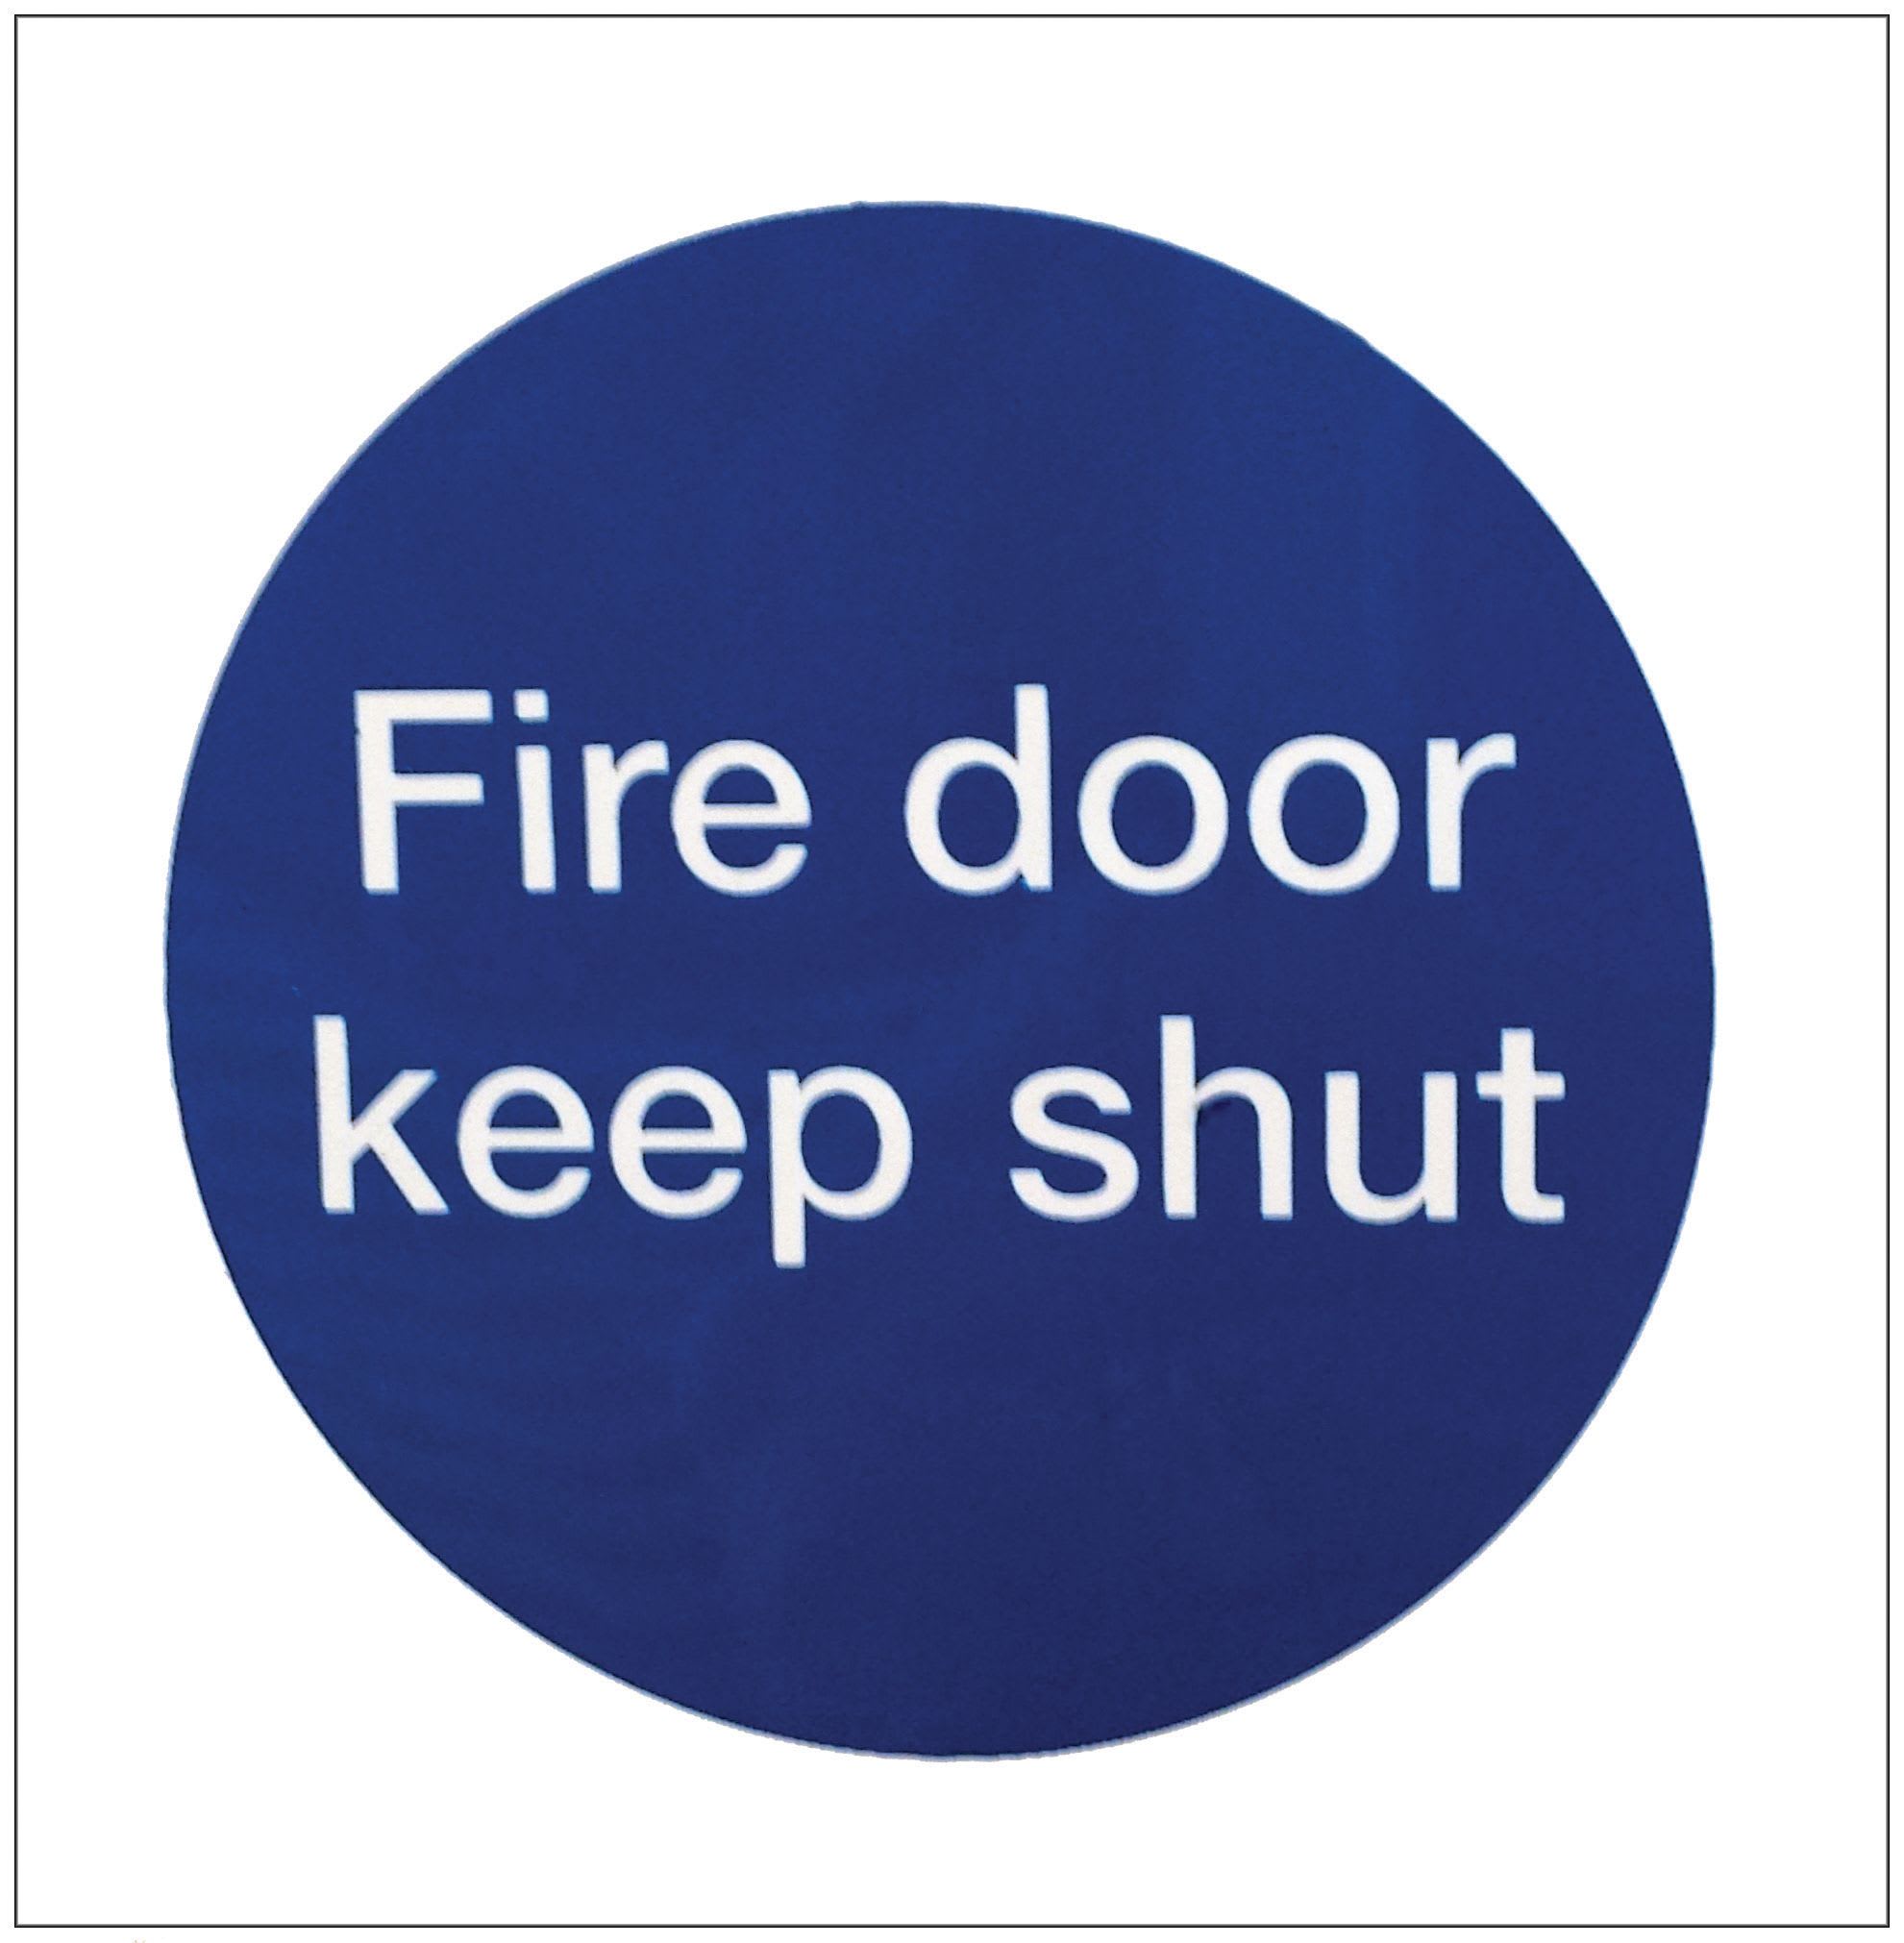 4FireDoors Fire Door Keep Shut Safety Sign -